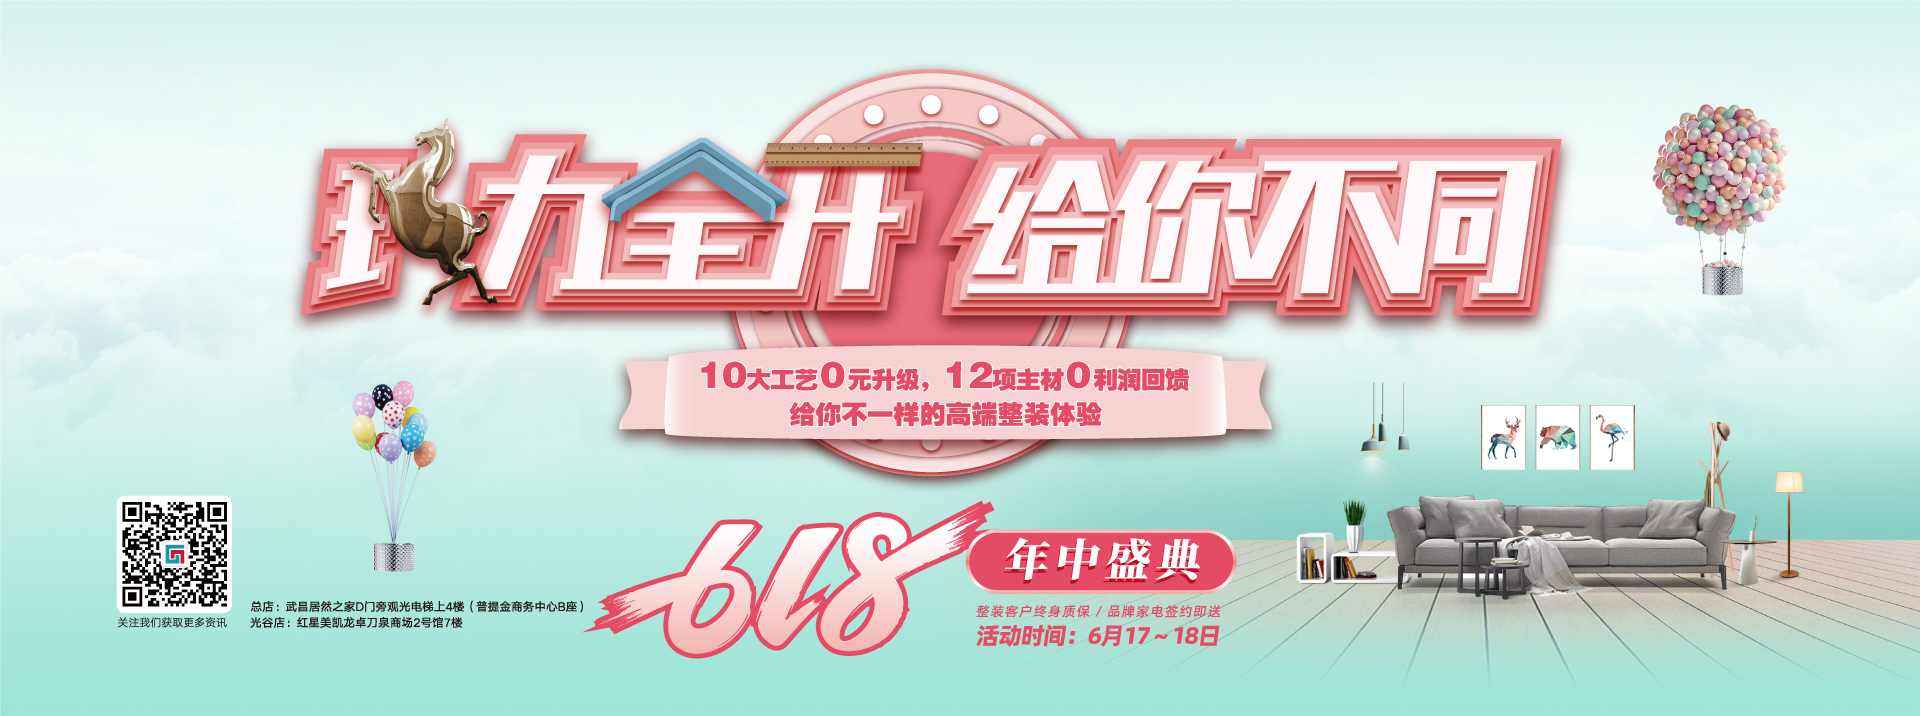 中国胖美女黄片视频影院六西格玛装饰活动海报